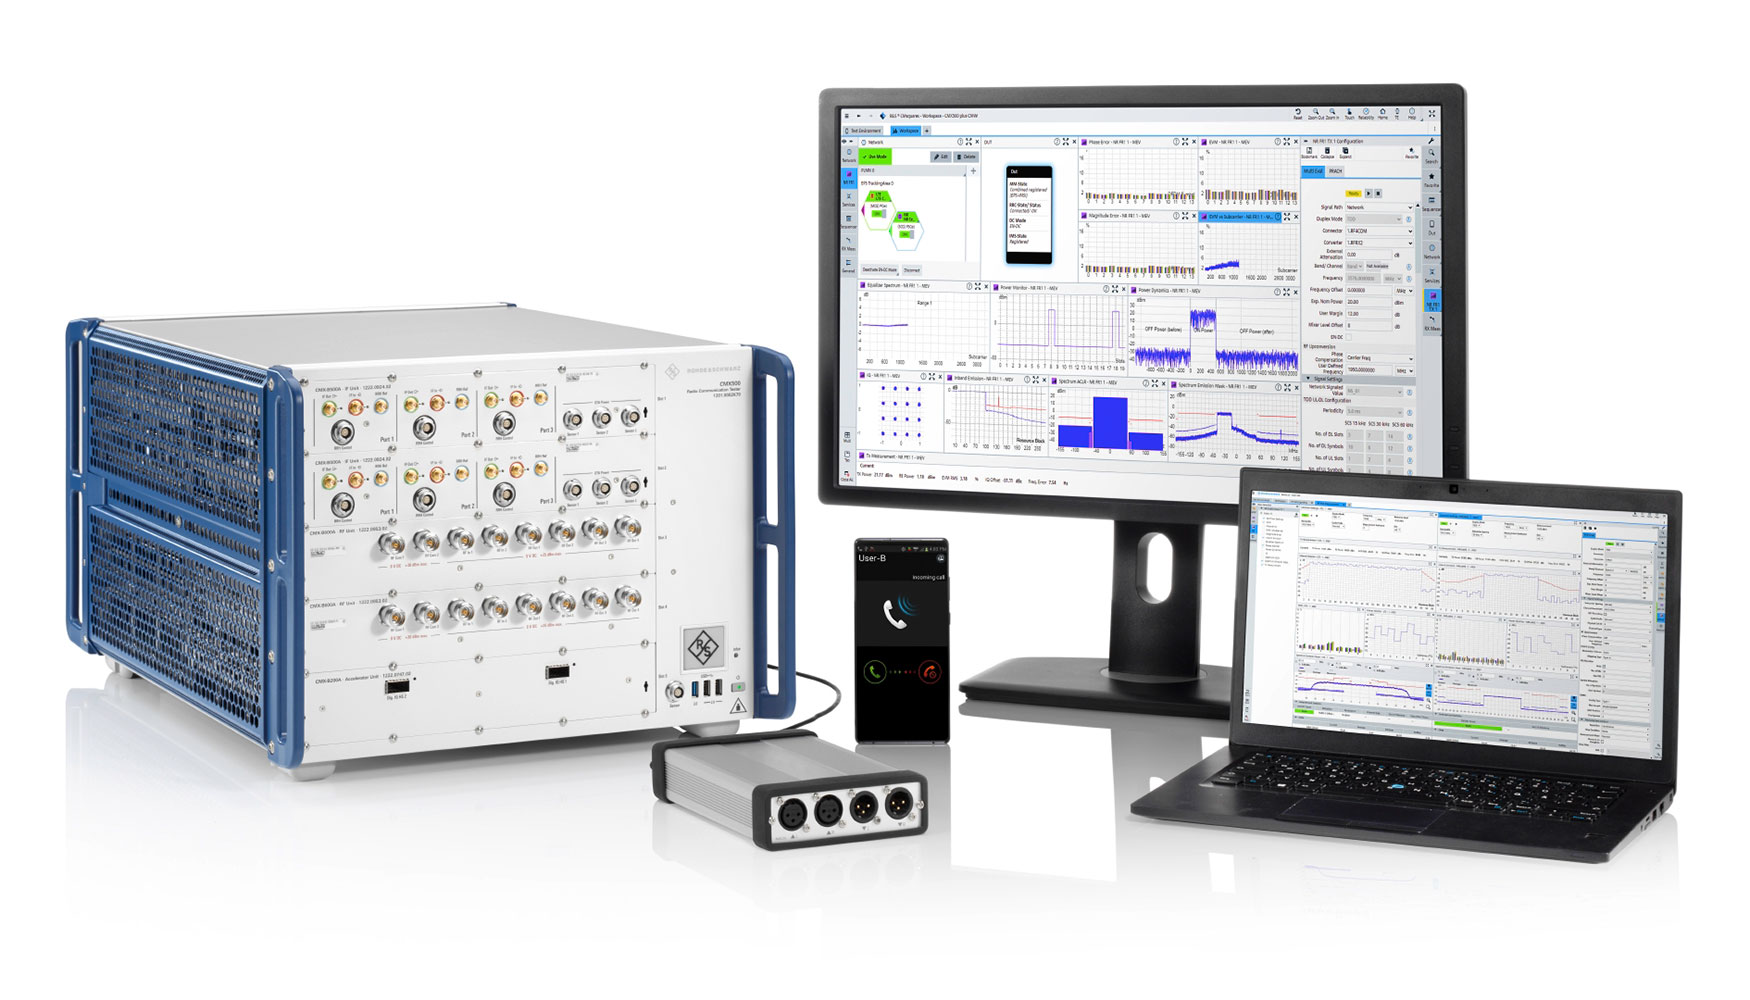 Cubtek Inc. utiliza el analizador de redes R&S ZVA40 y el convertidor de ondas milimtricas R&S ZVA-Z90